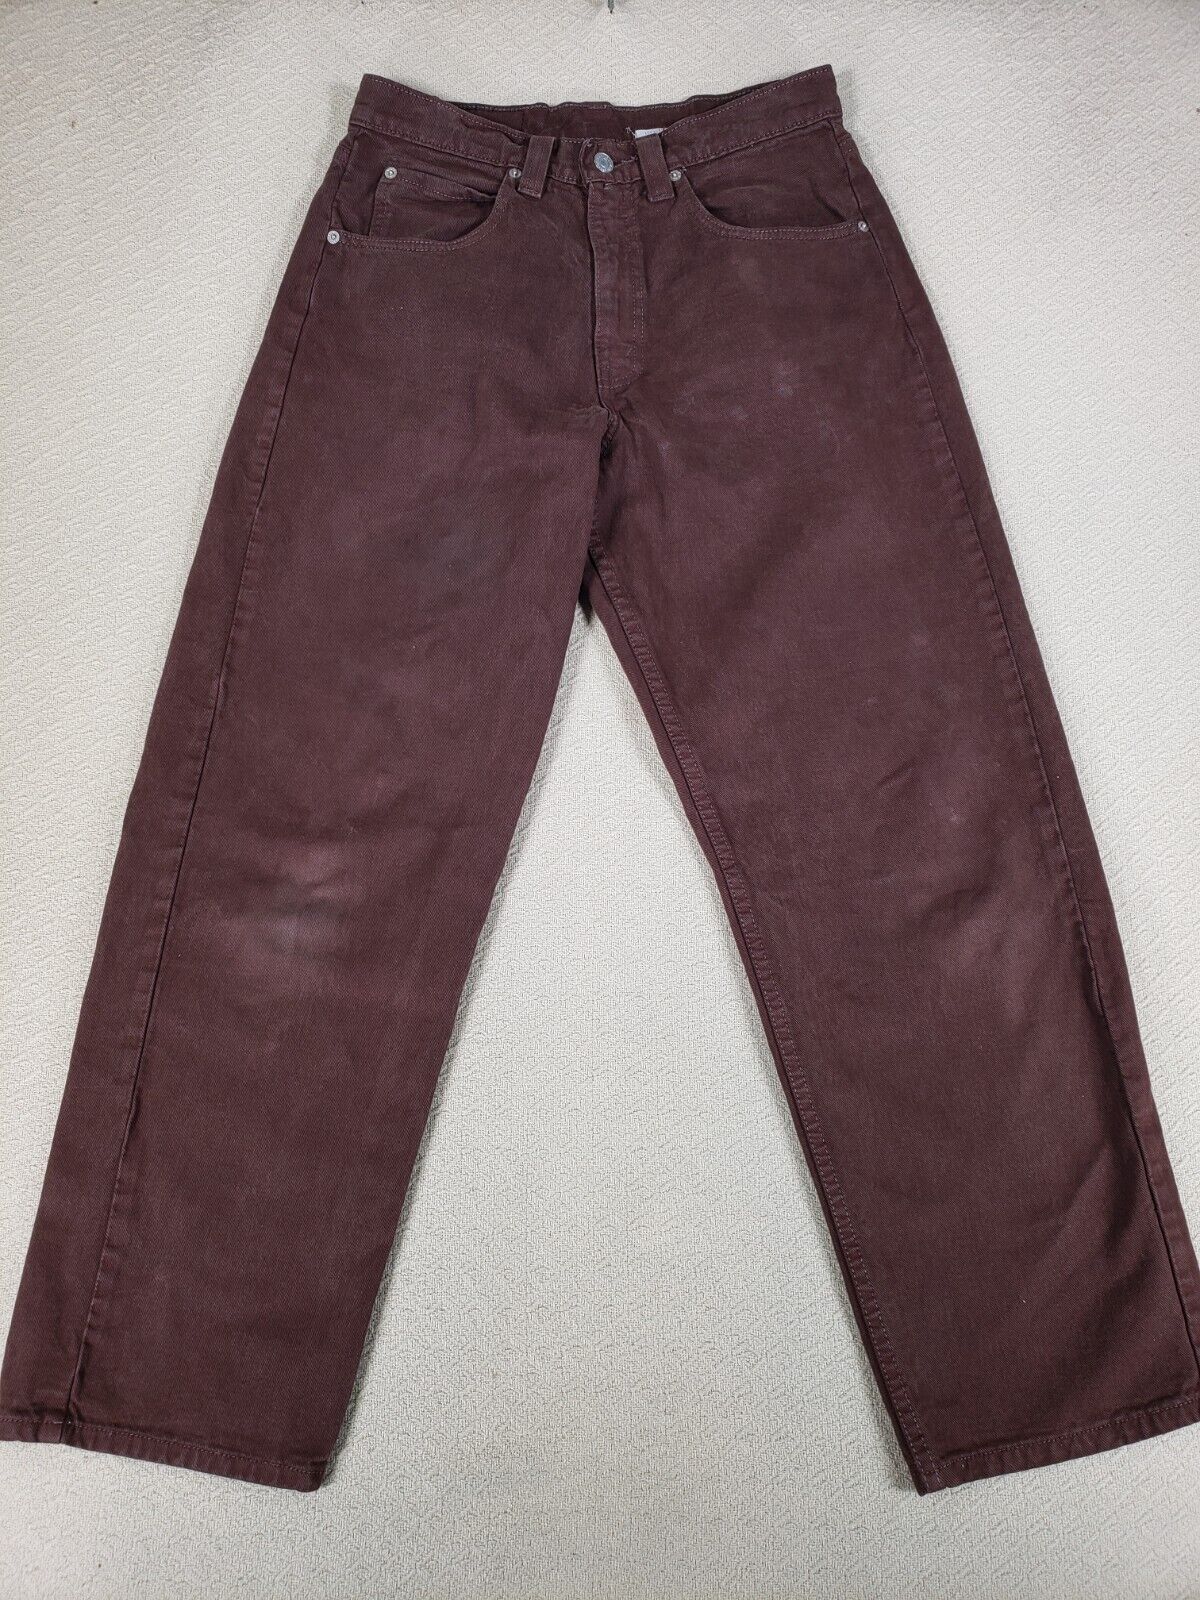 Vintage Levis L2 Jeans Mens 31x30 Brown Baggy Denim Wide Leg Grunge Y2K Hip Hop